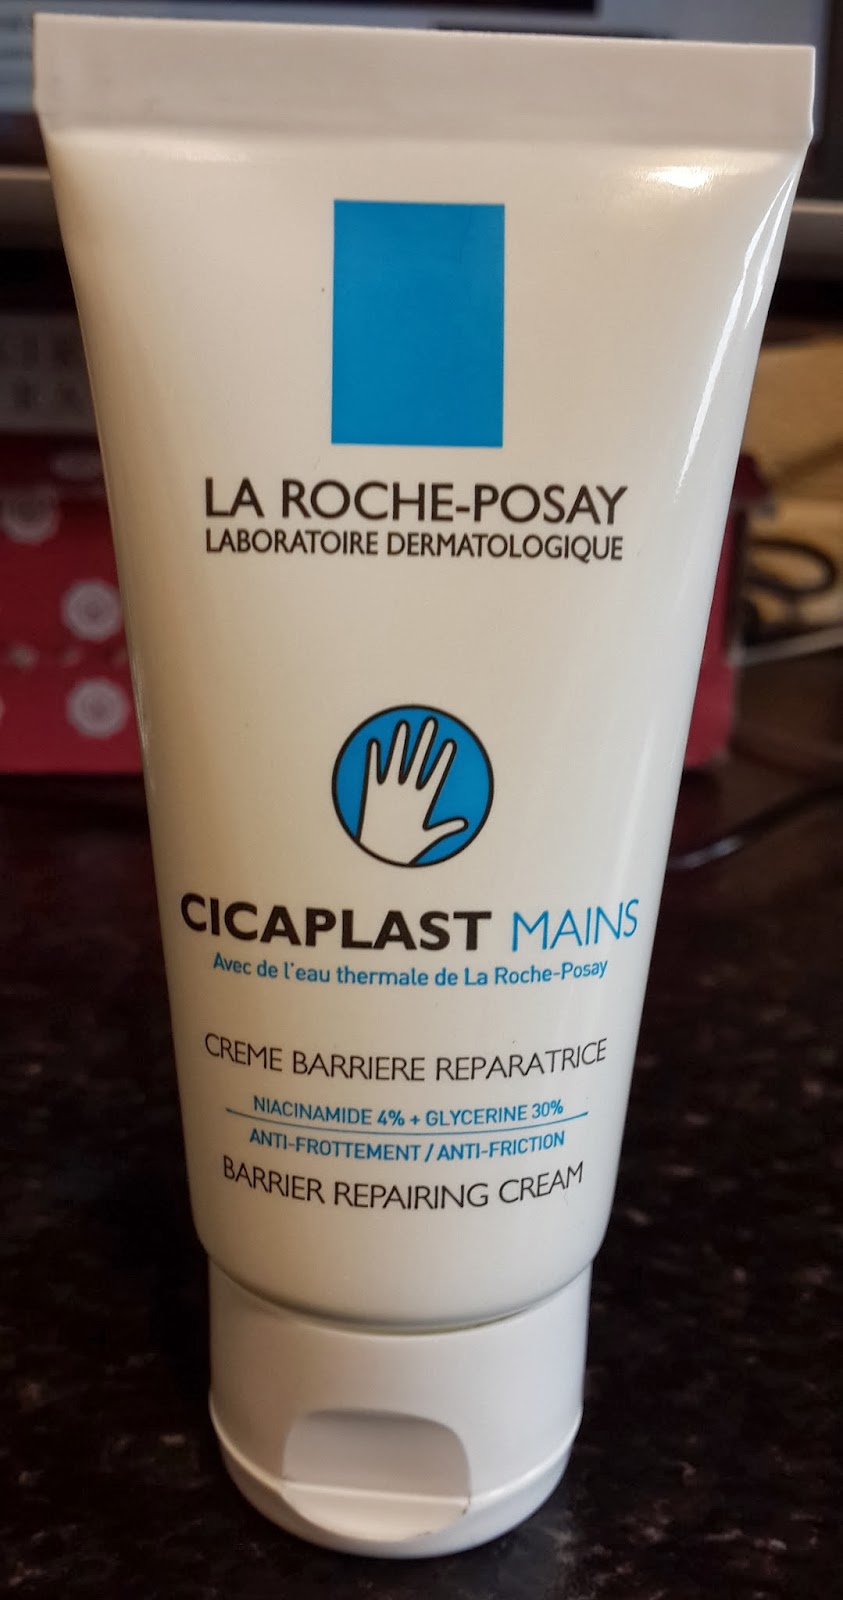 manuskript Notesbog Albany La Roche-Posay Cicaplast Hands Barrier Repairing Cream Review